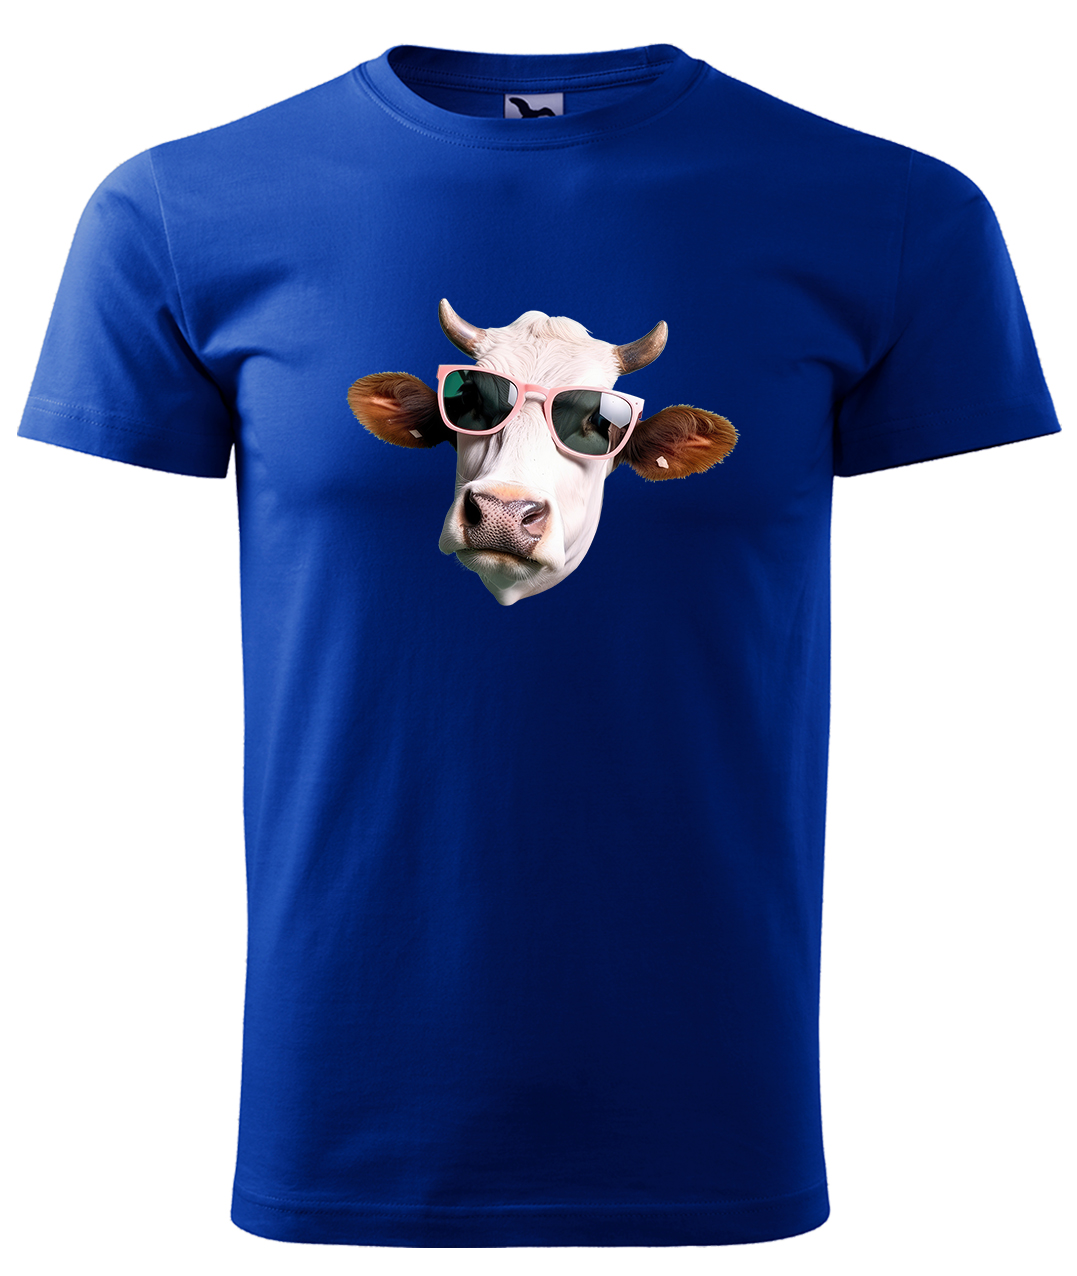 Dětské tričko s krávou - Kráva v brýlích Velikost: 4 roky / 110 cm, Barva: Královská modrá (05), Délka rukávu: Krátký rukáv